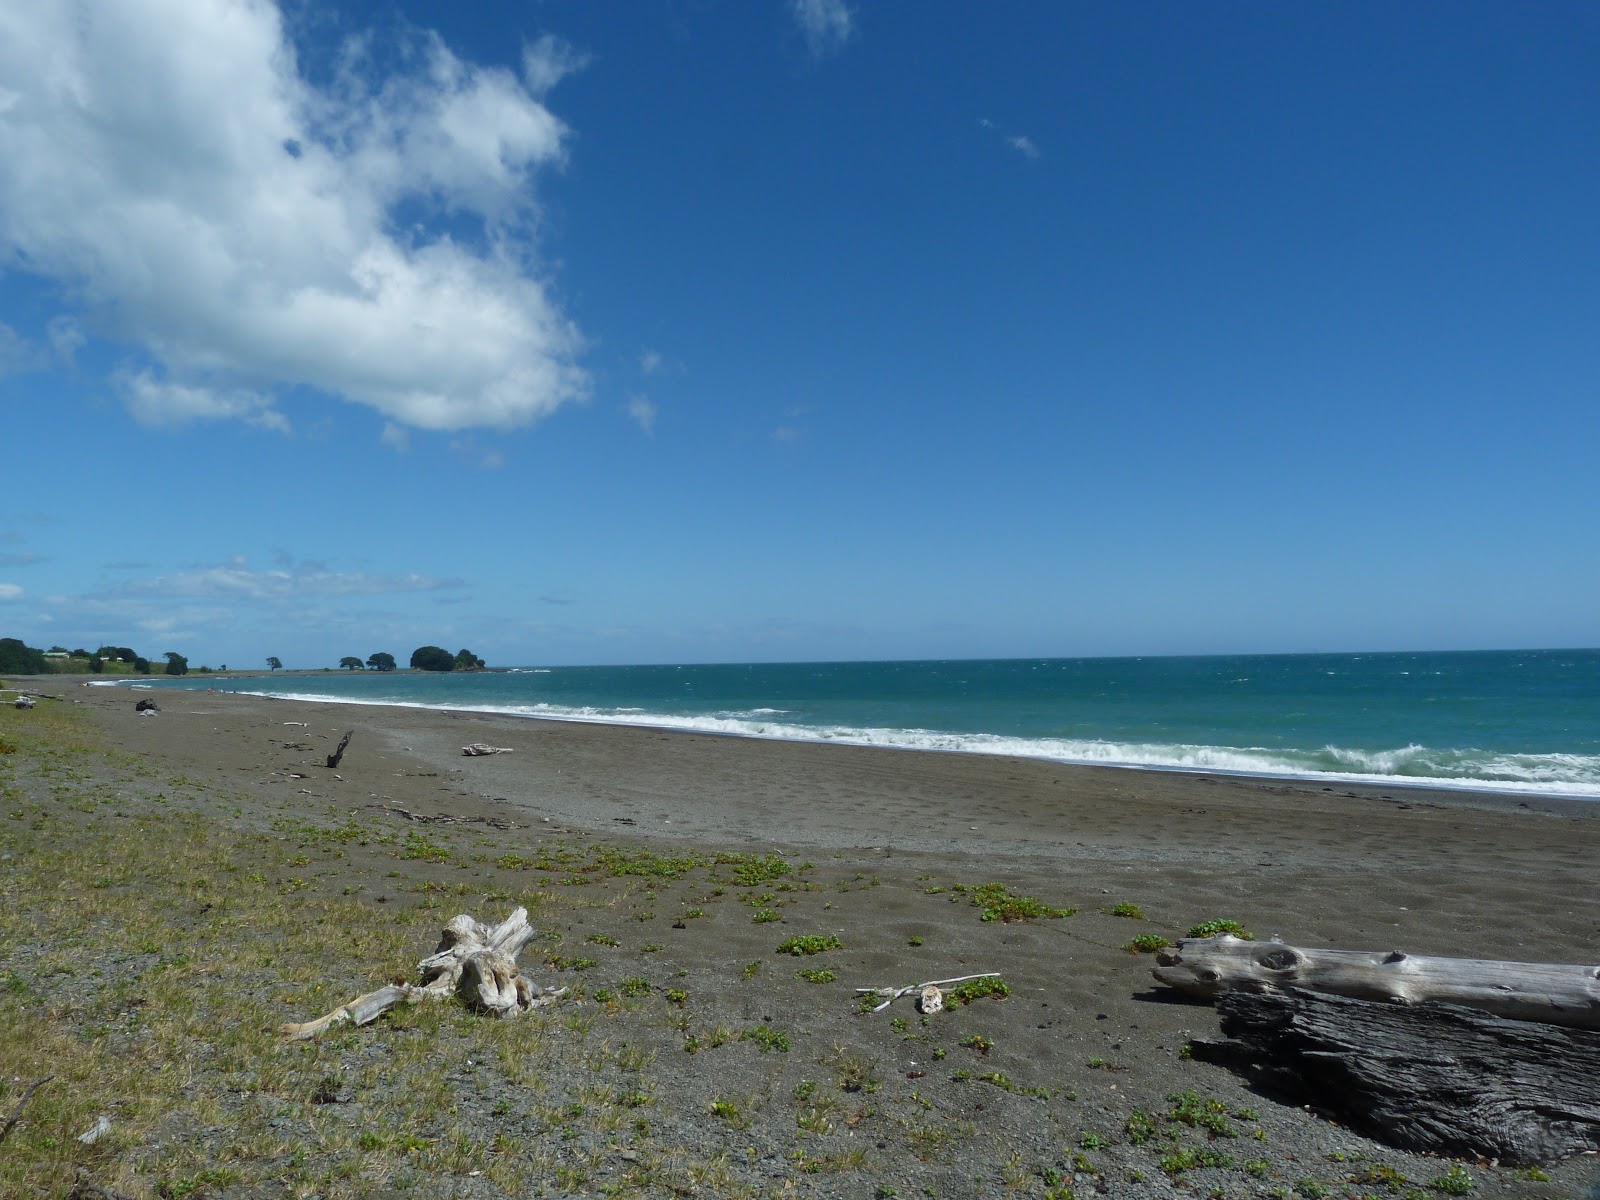 Zdjęcie Te Kaka Beach z powierzchnią szary piasek